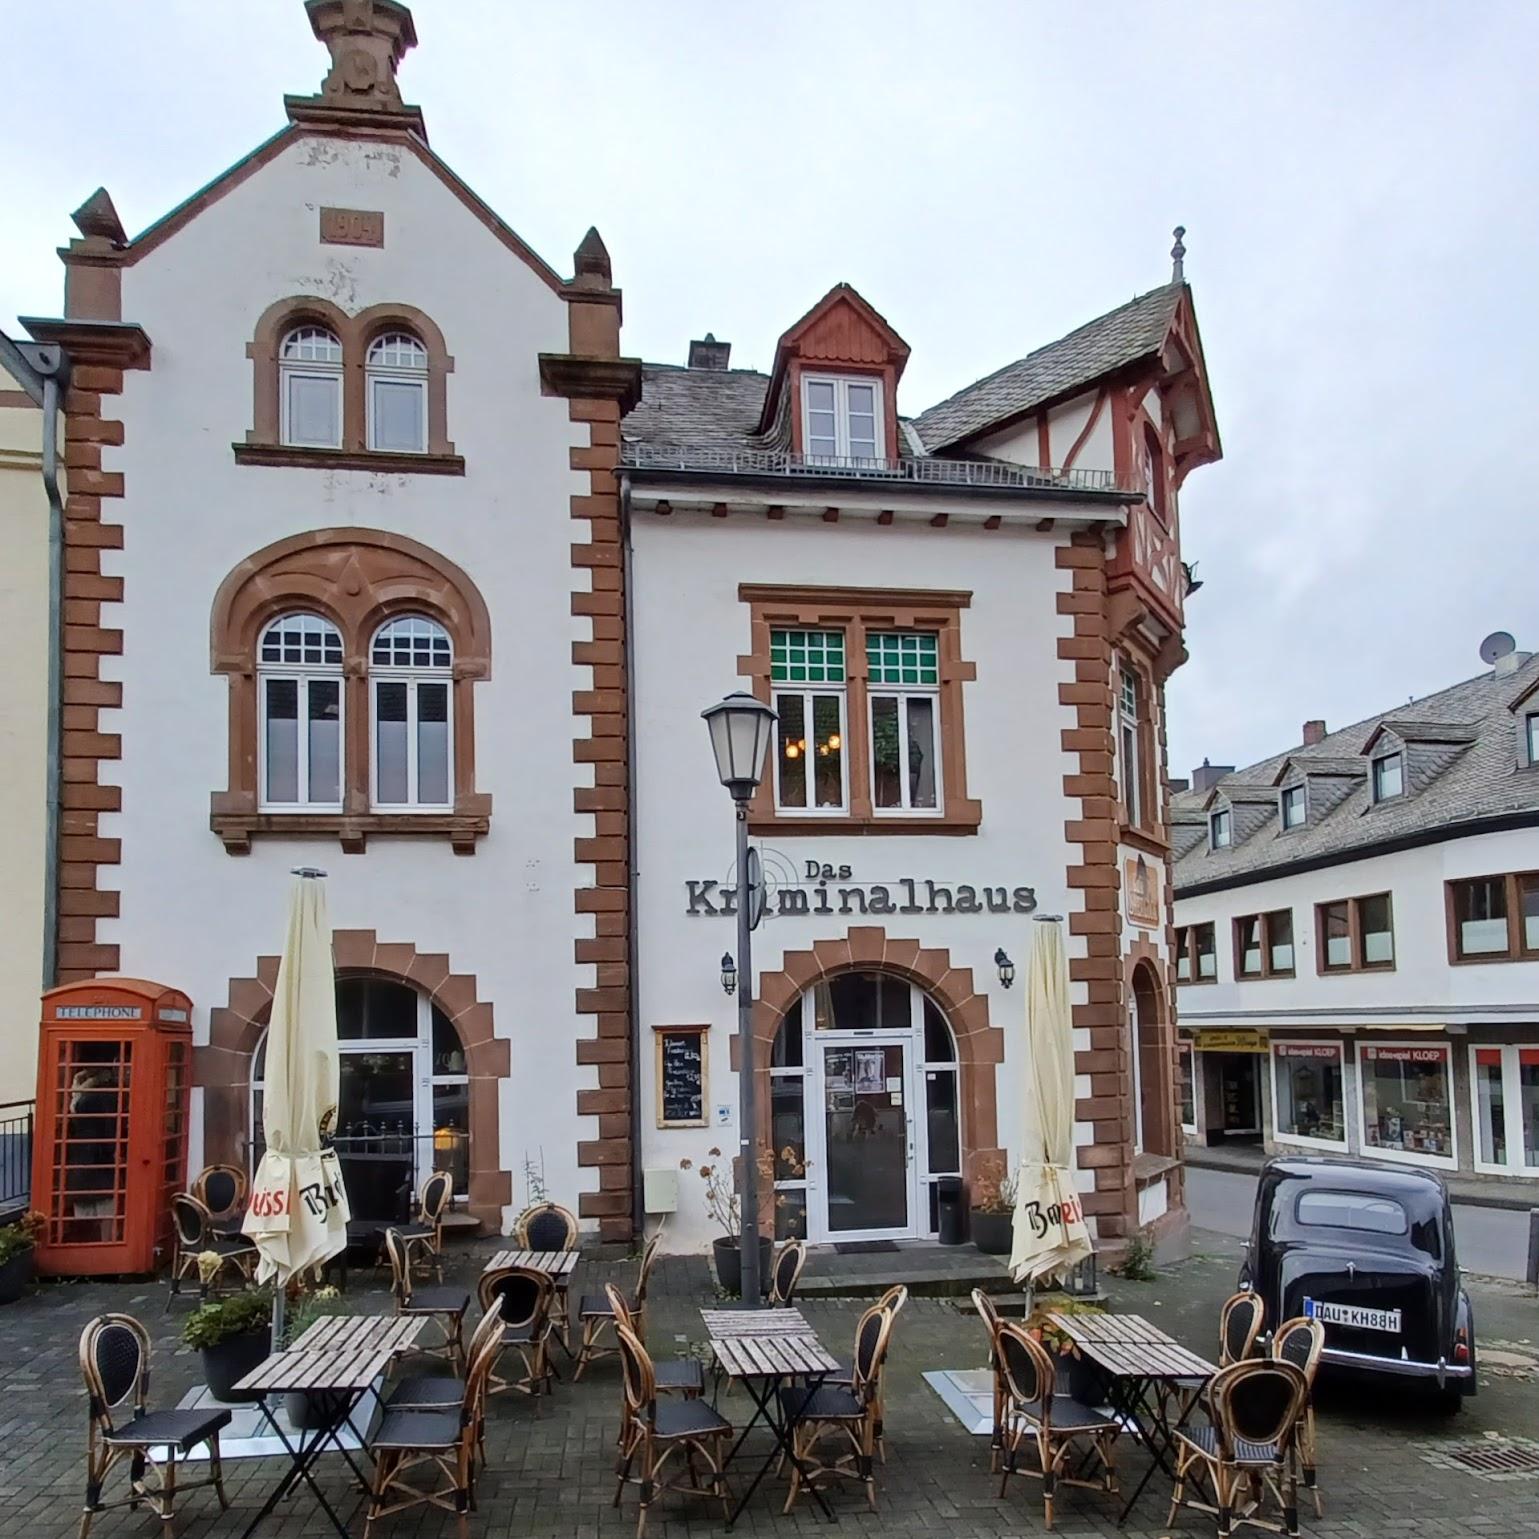 Restaurant "Das Kriminalhaus" in Hillesheim